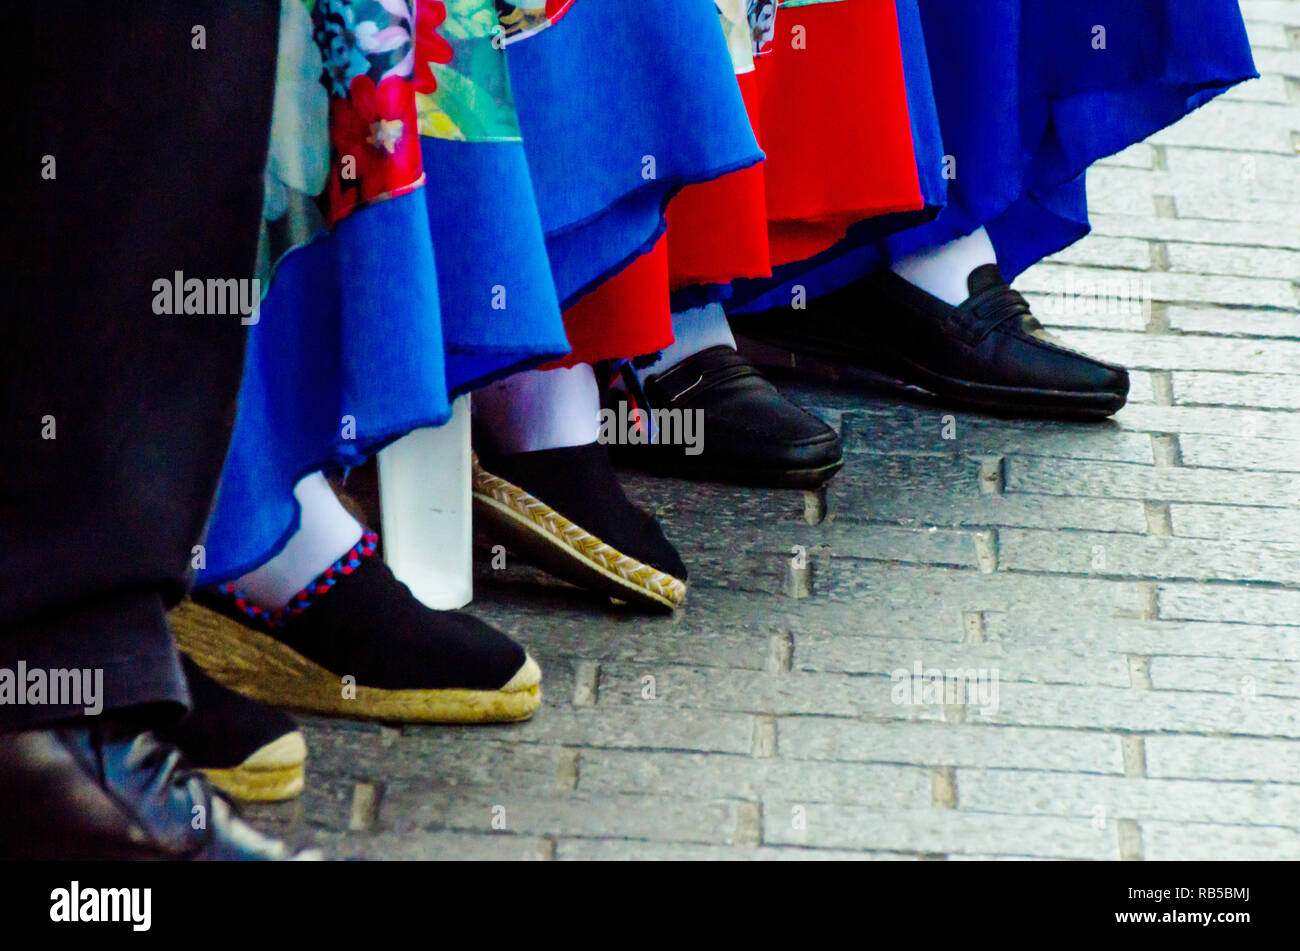 Traditionelle bunte Schuhe für die Kostüme in Spanien, Tanzschuhe,  espadrilles Stockfotografie - Alamy